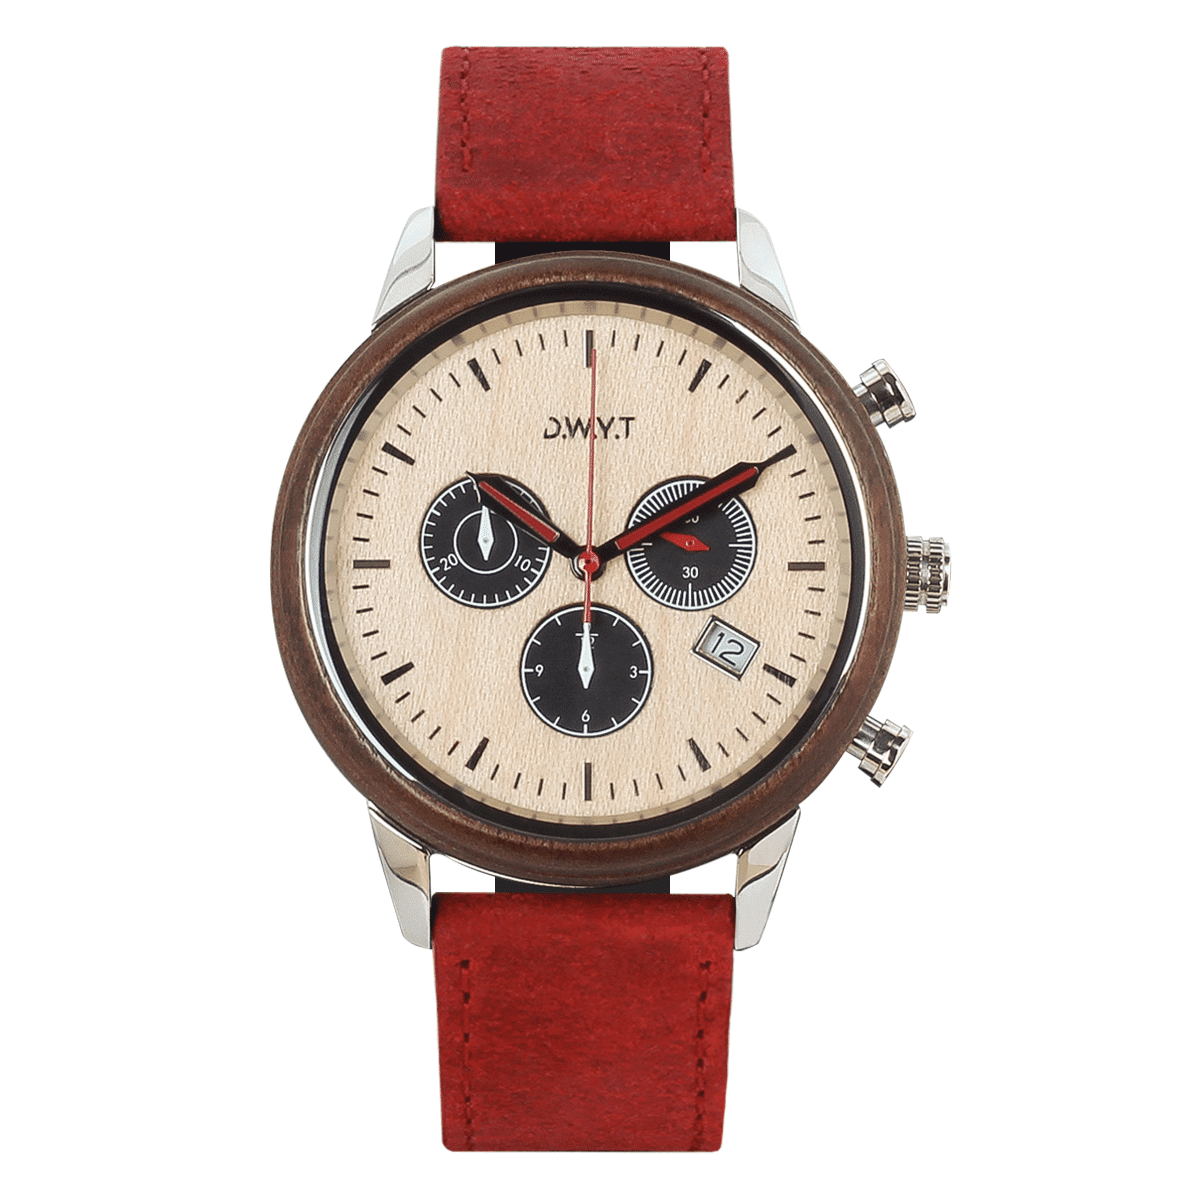 Montre chronographe Marco polo avec bracelet en cuir vintage rouge vermillon